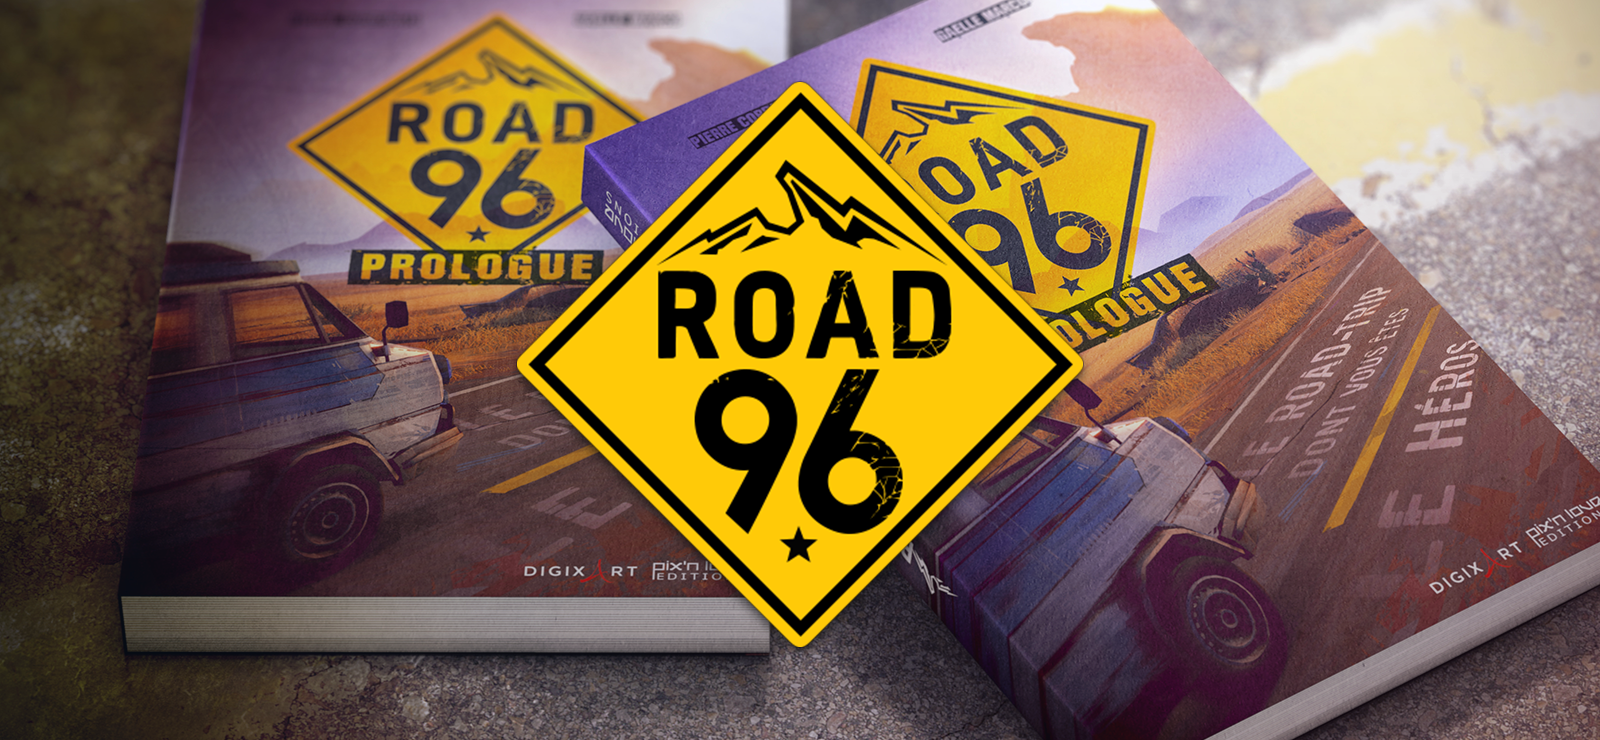 Road 96 - Prologue EBook